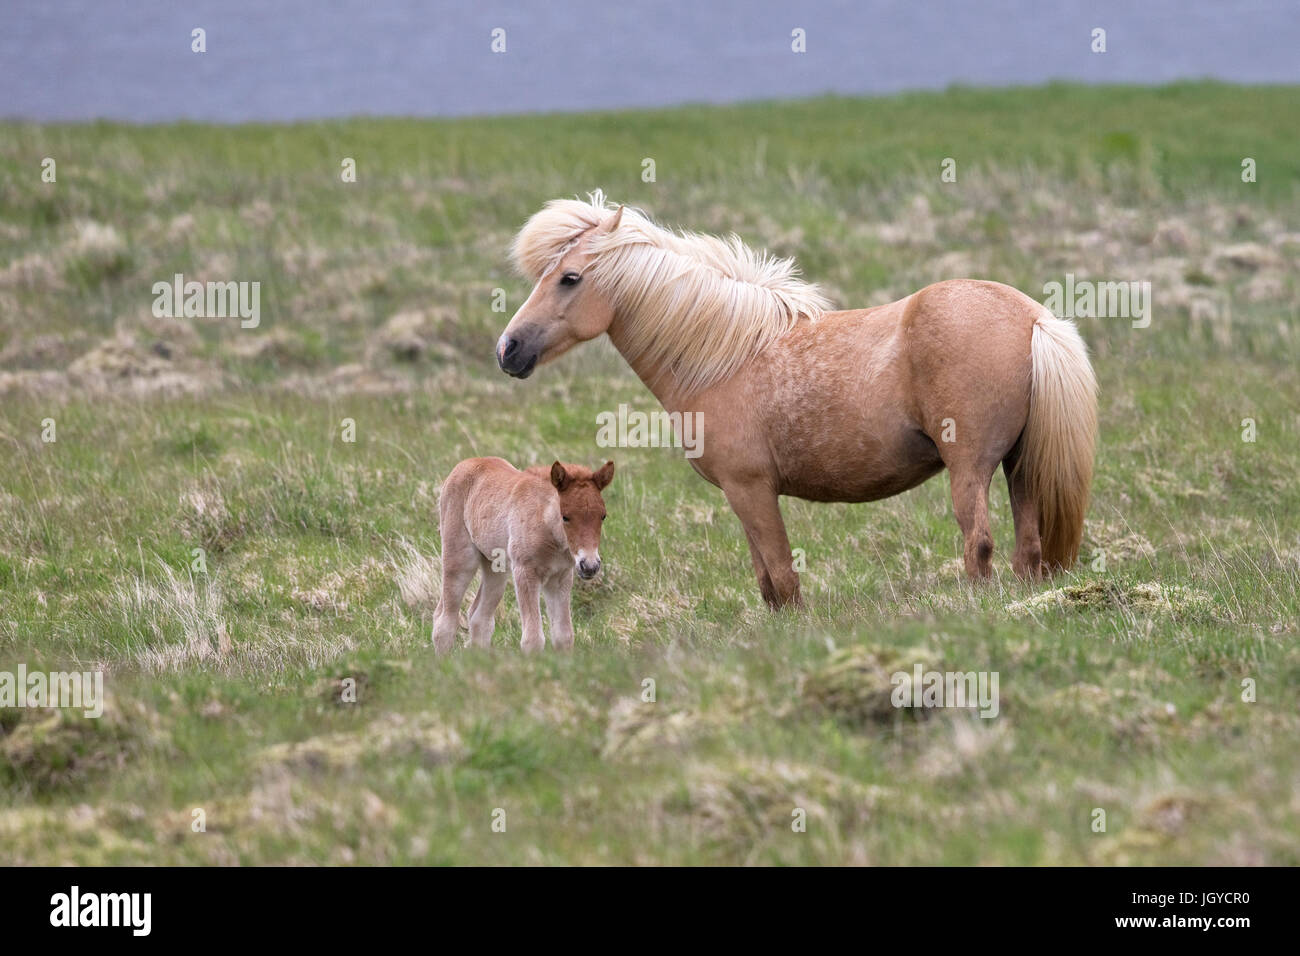 Cheval islandais (Equus ferus caballus) Banque D'Images